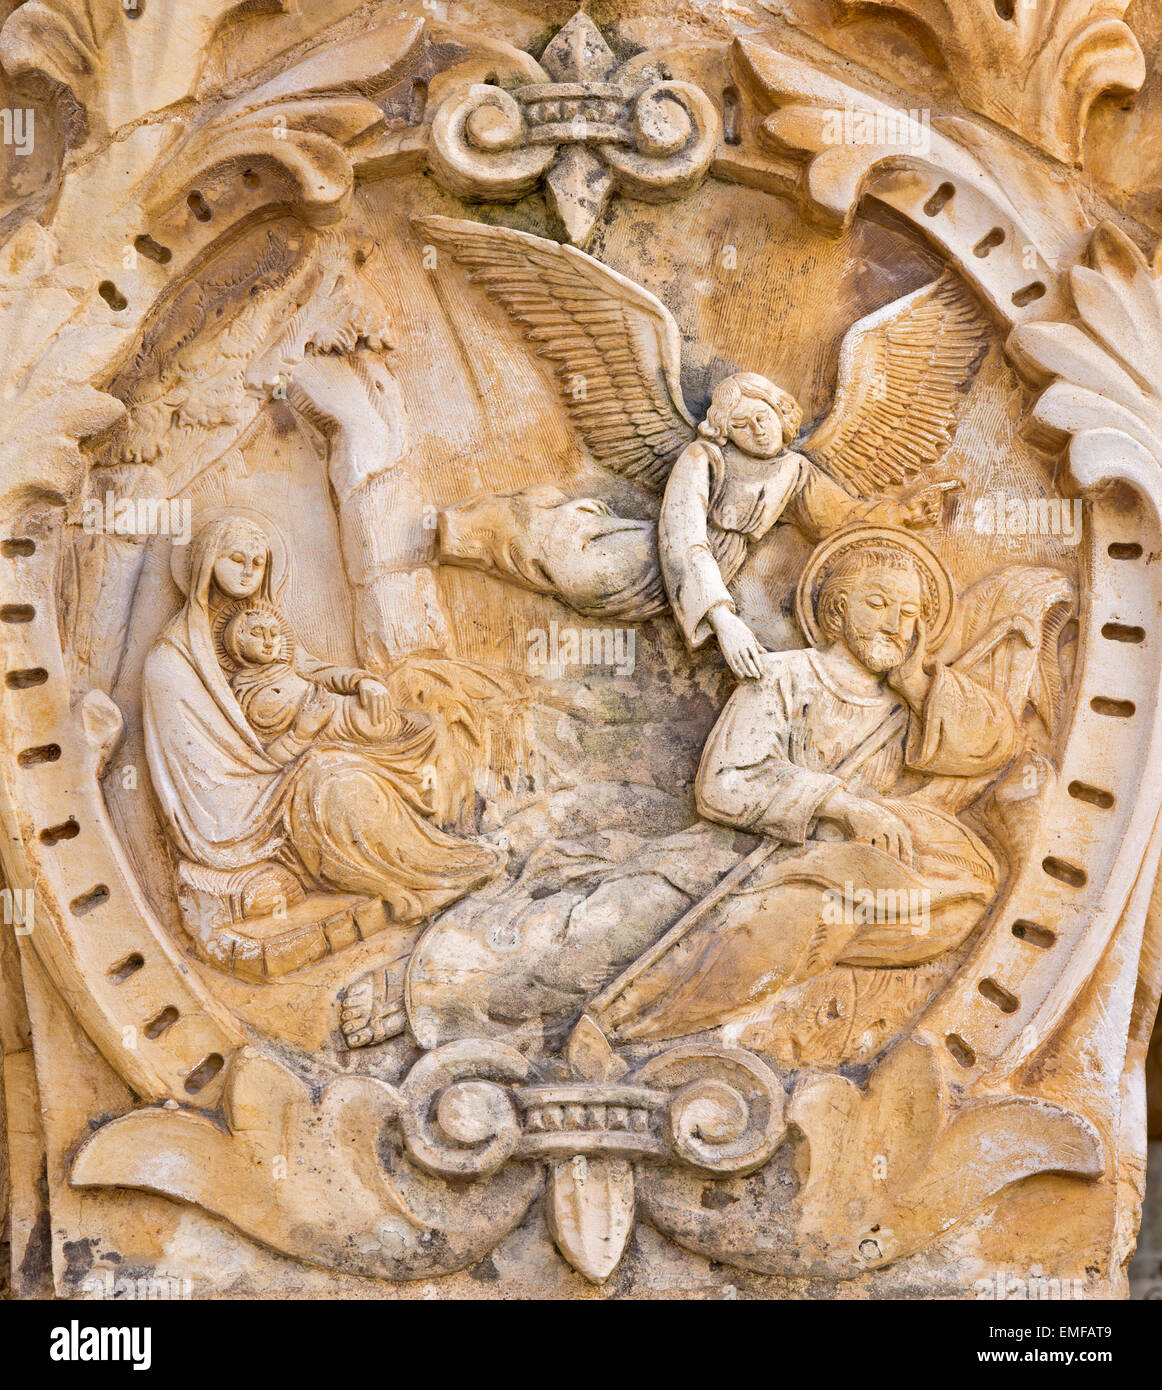 Betlemme, Israele - 6 Marzo 2015: La Madonna di angelo e di pastore. Il rilievo sul portale nella cappella di 'Milk Grotta Grotta". Foto Stock